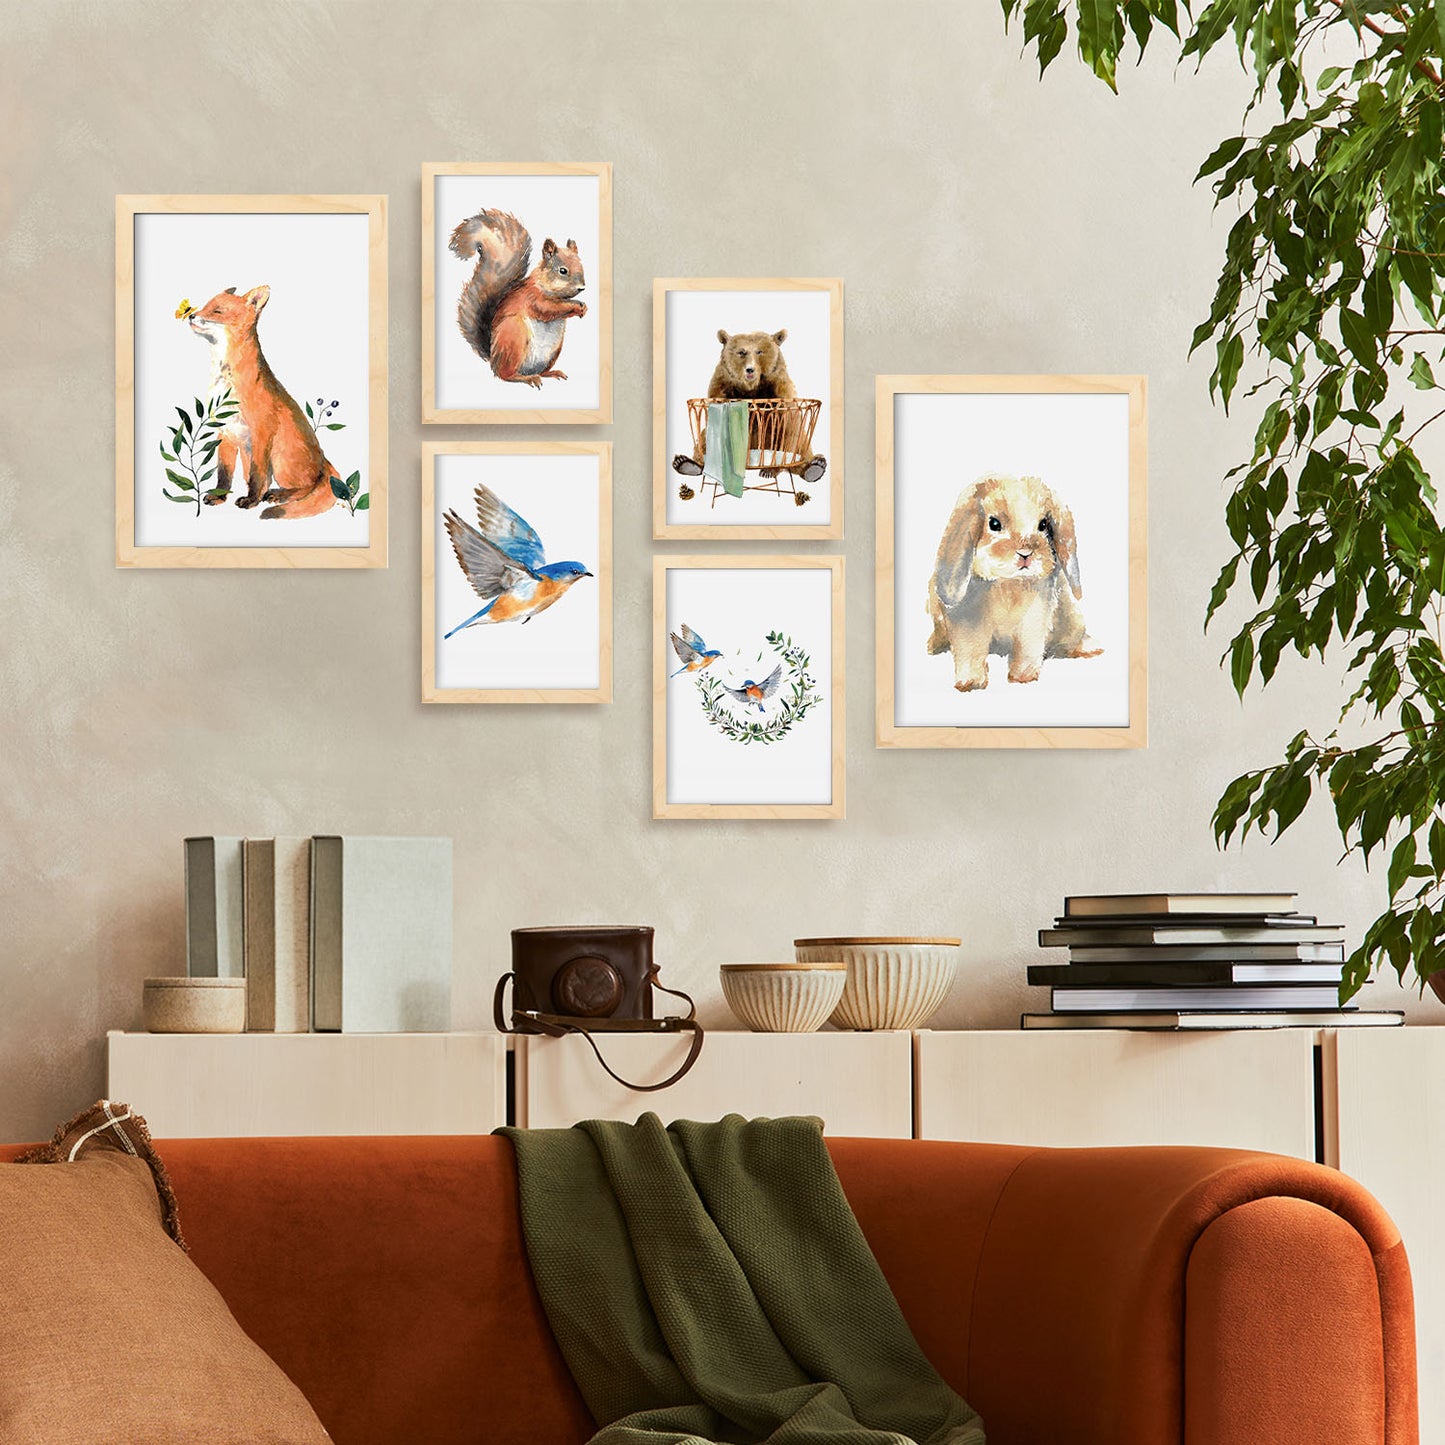 Nacnic Set de 6 Animales de acuarela Posters. En Huellas de guardería. Estampados decorativos estéticos para su sala de estar, dormitorio, hogar Tamaños A4 y A3